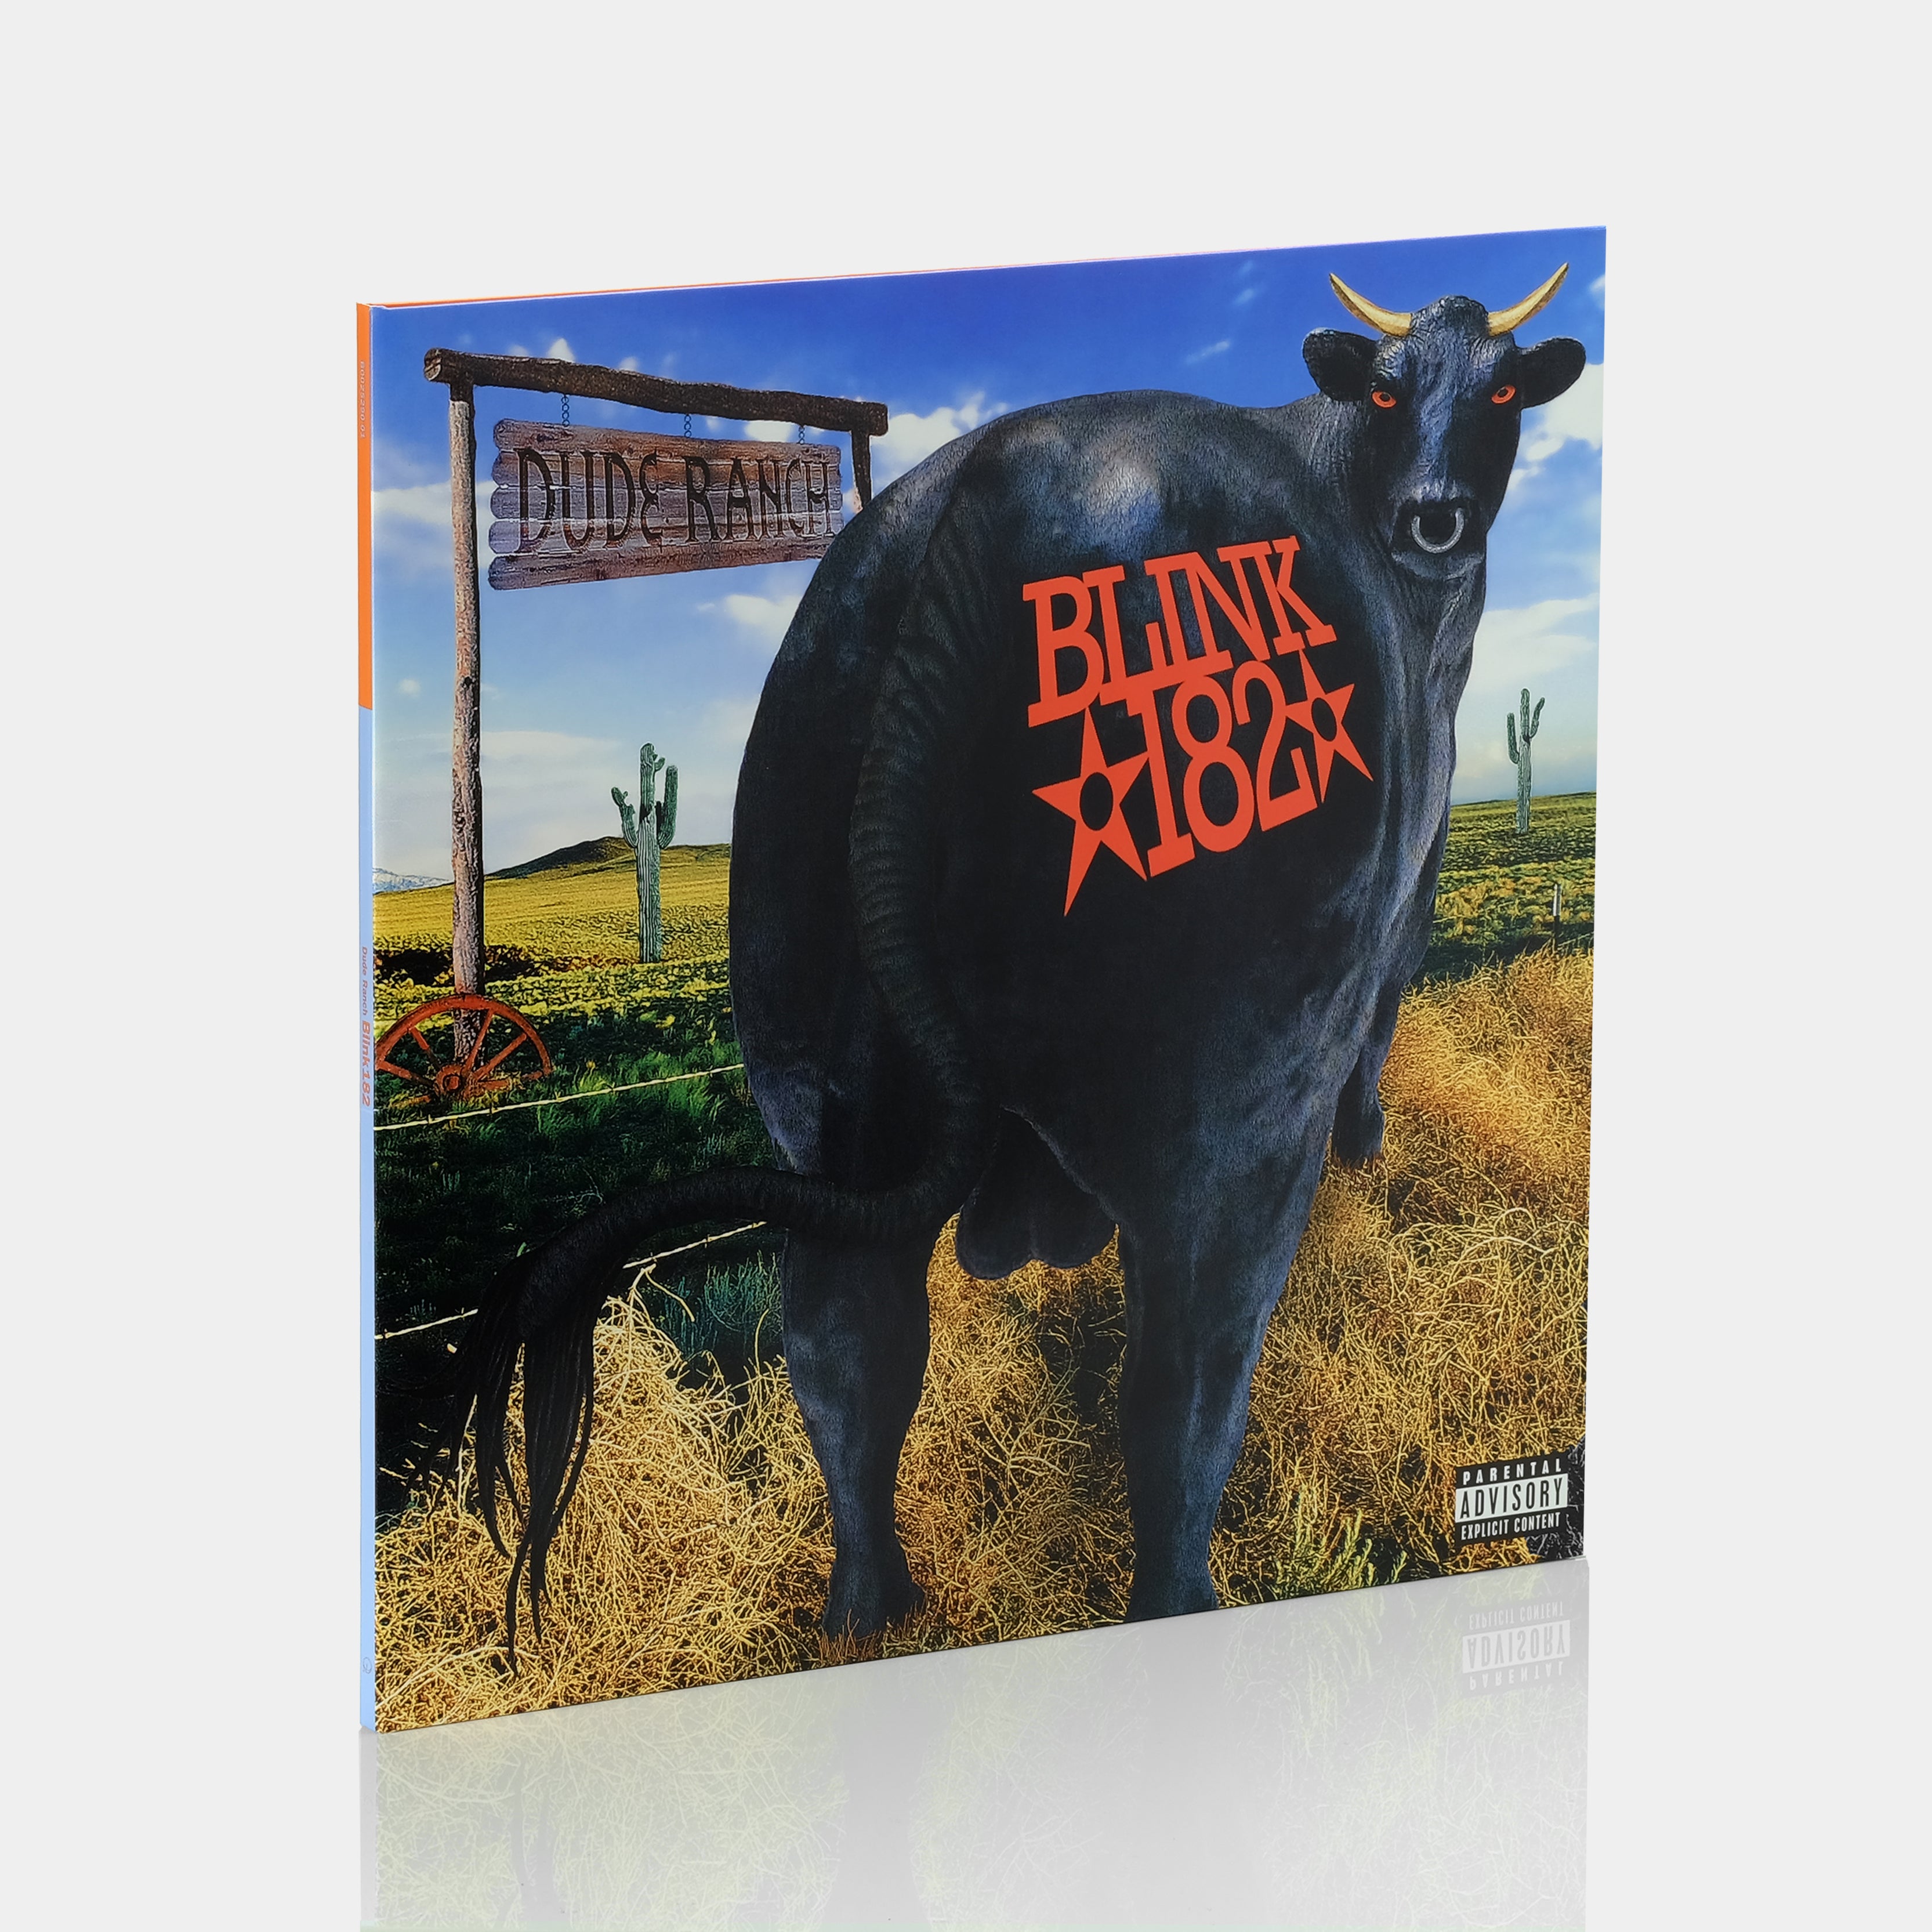 得価正規店blink 182 /dude ranch レコードusオリジナル 洋楽